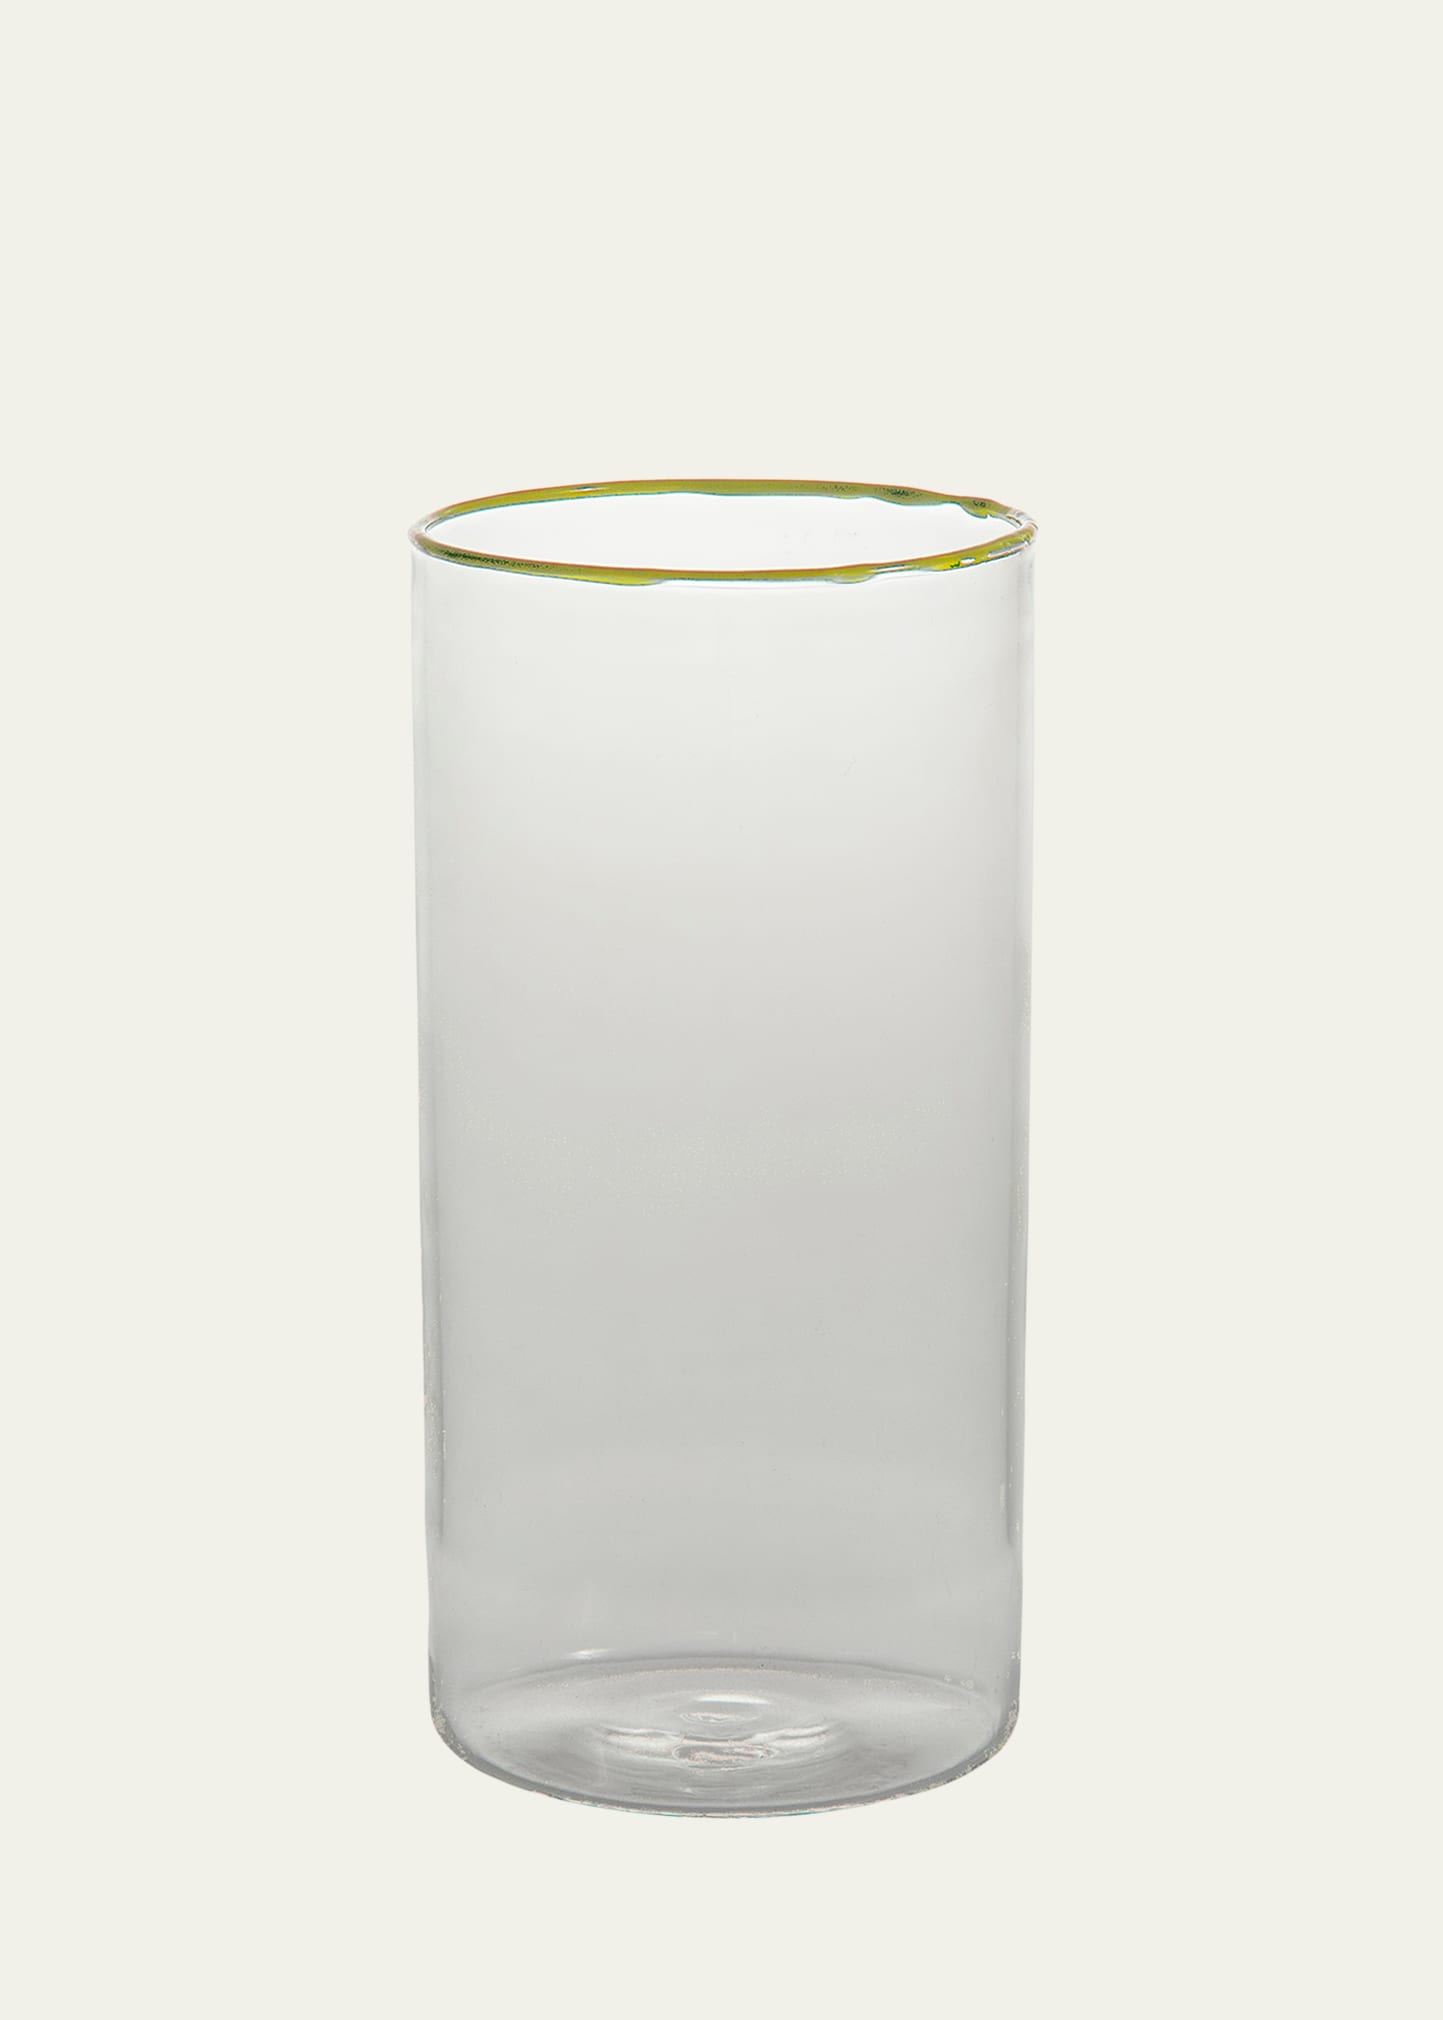 Lemon Yellow Highball Glass, 15.2 oz.